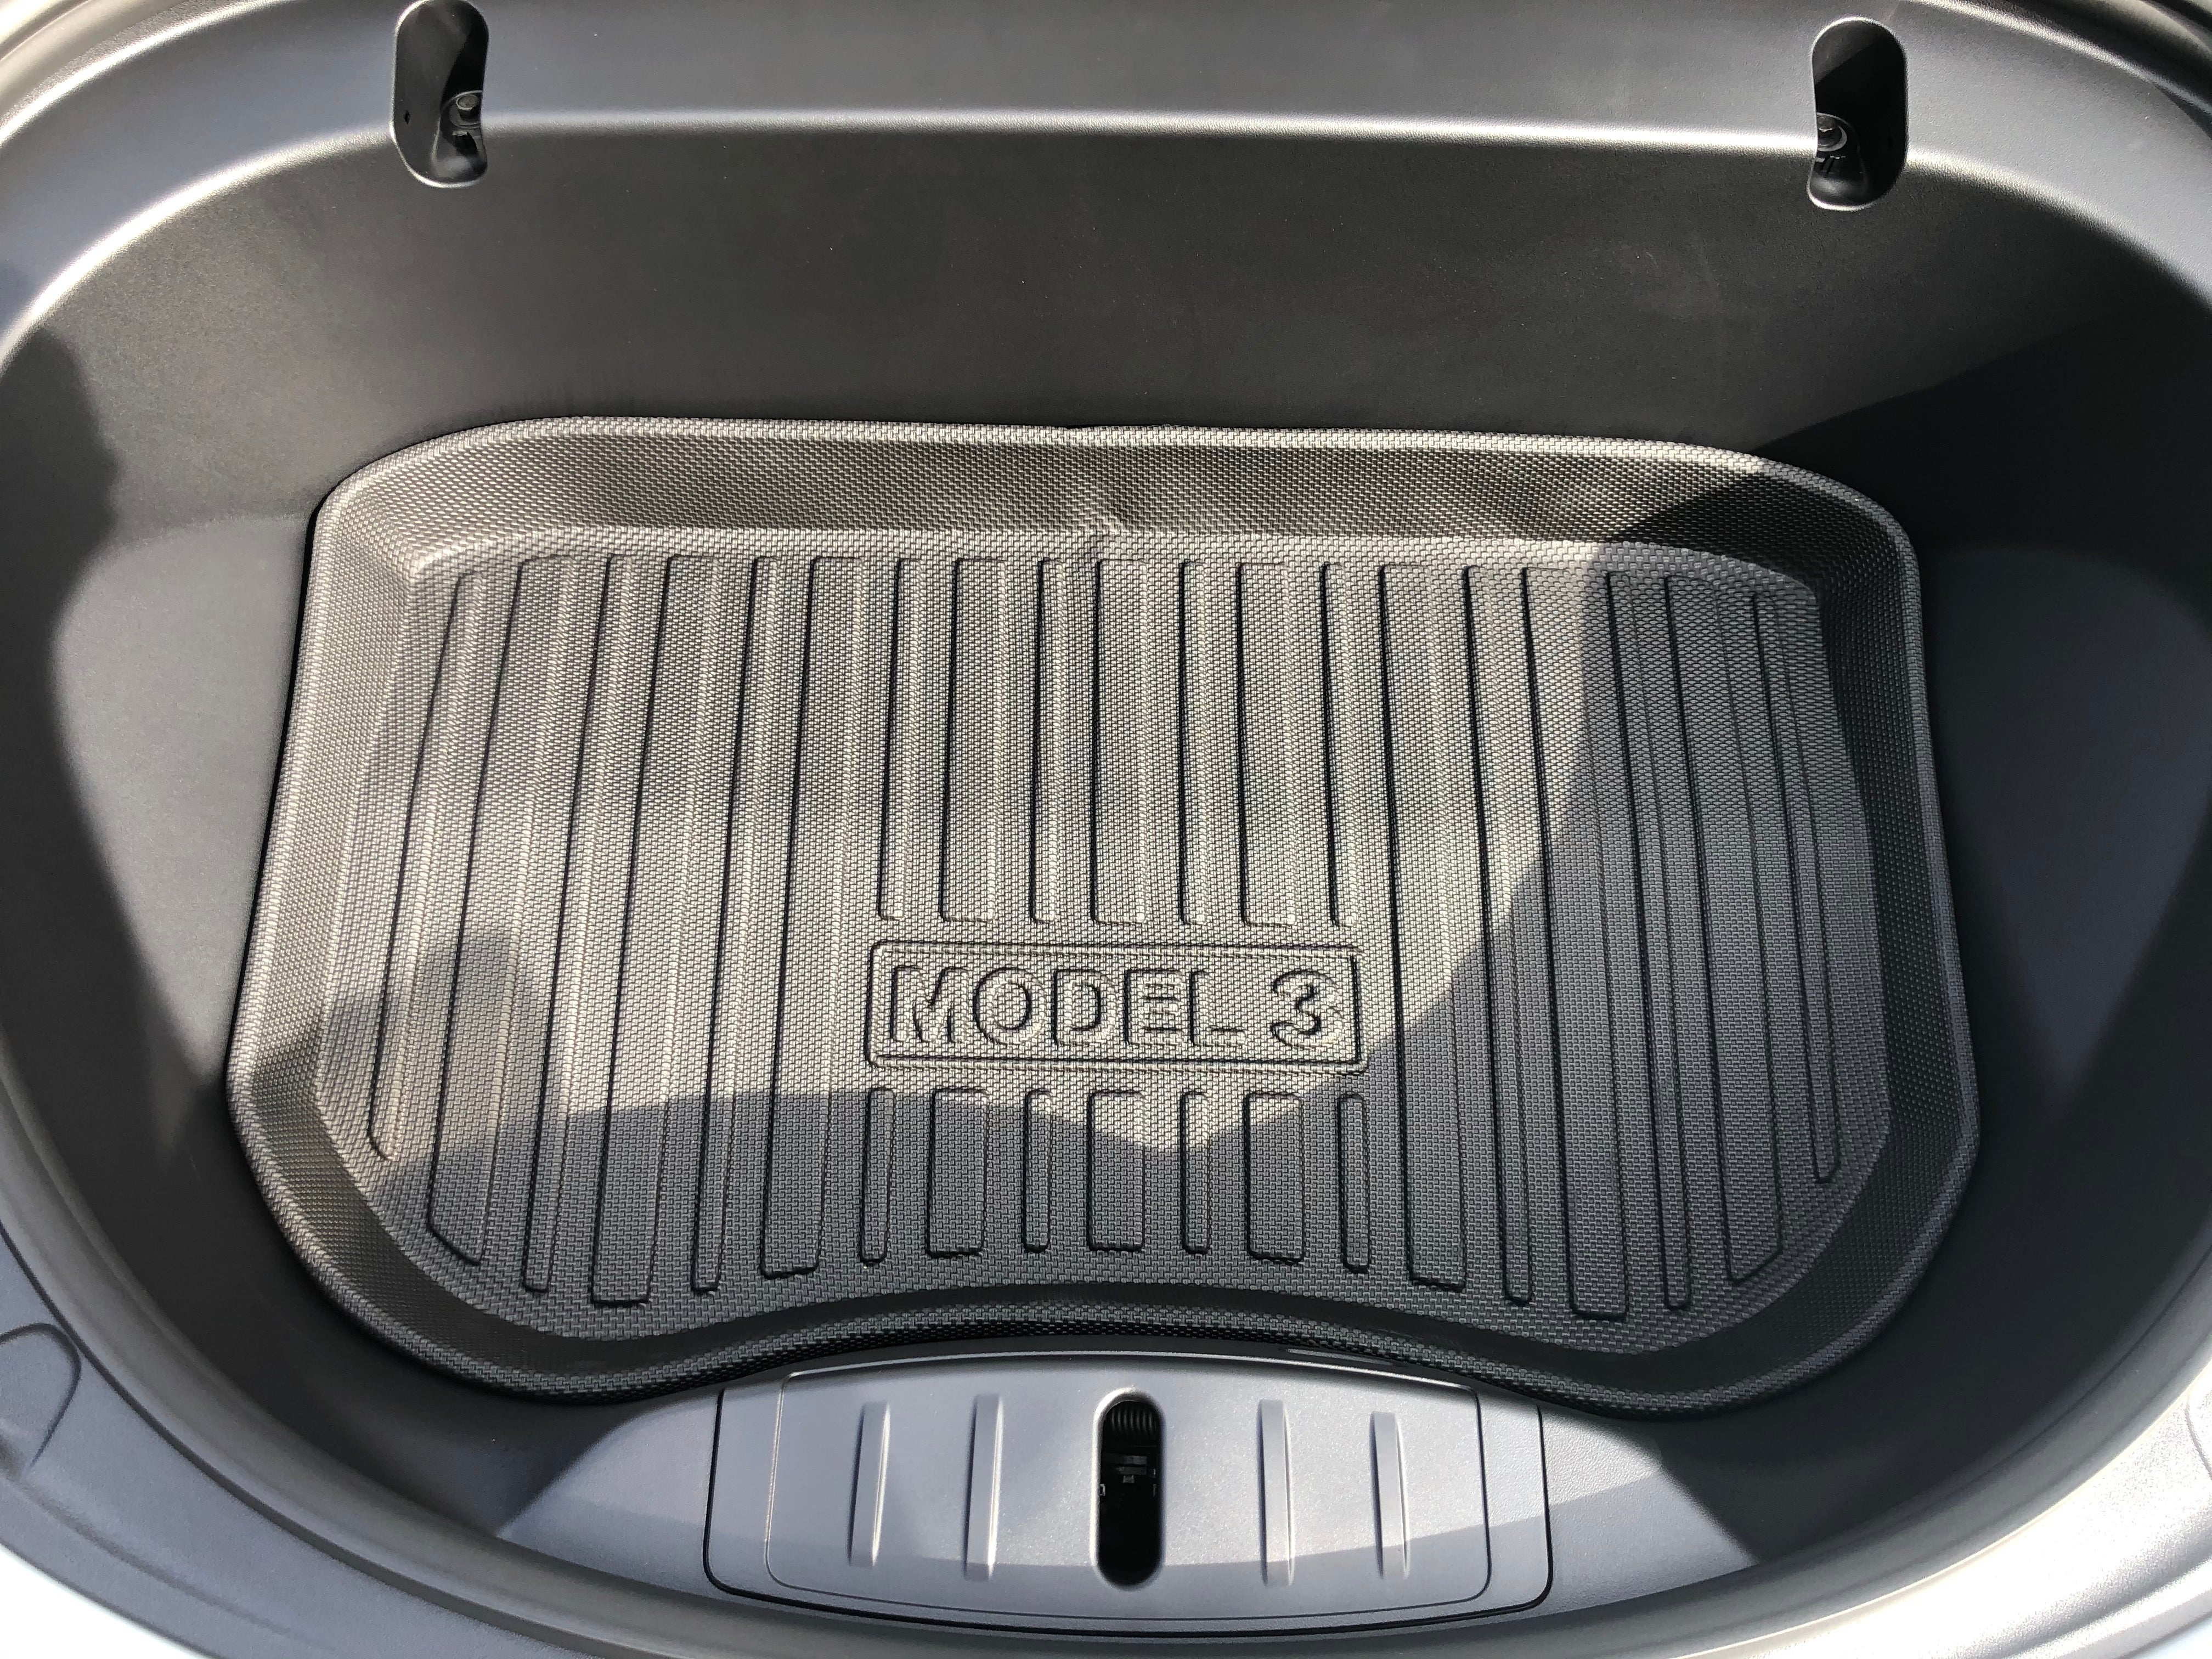 Tesla Model 3 Kofferraum Allwetter Schutzmatte - Streifendesign